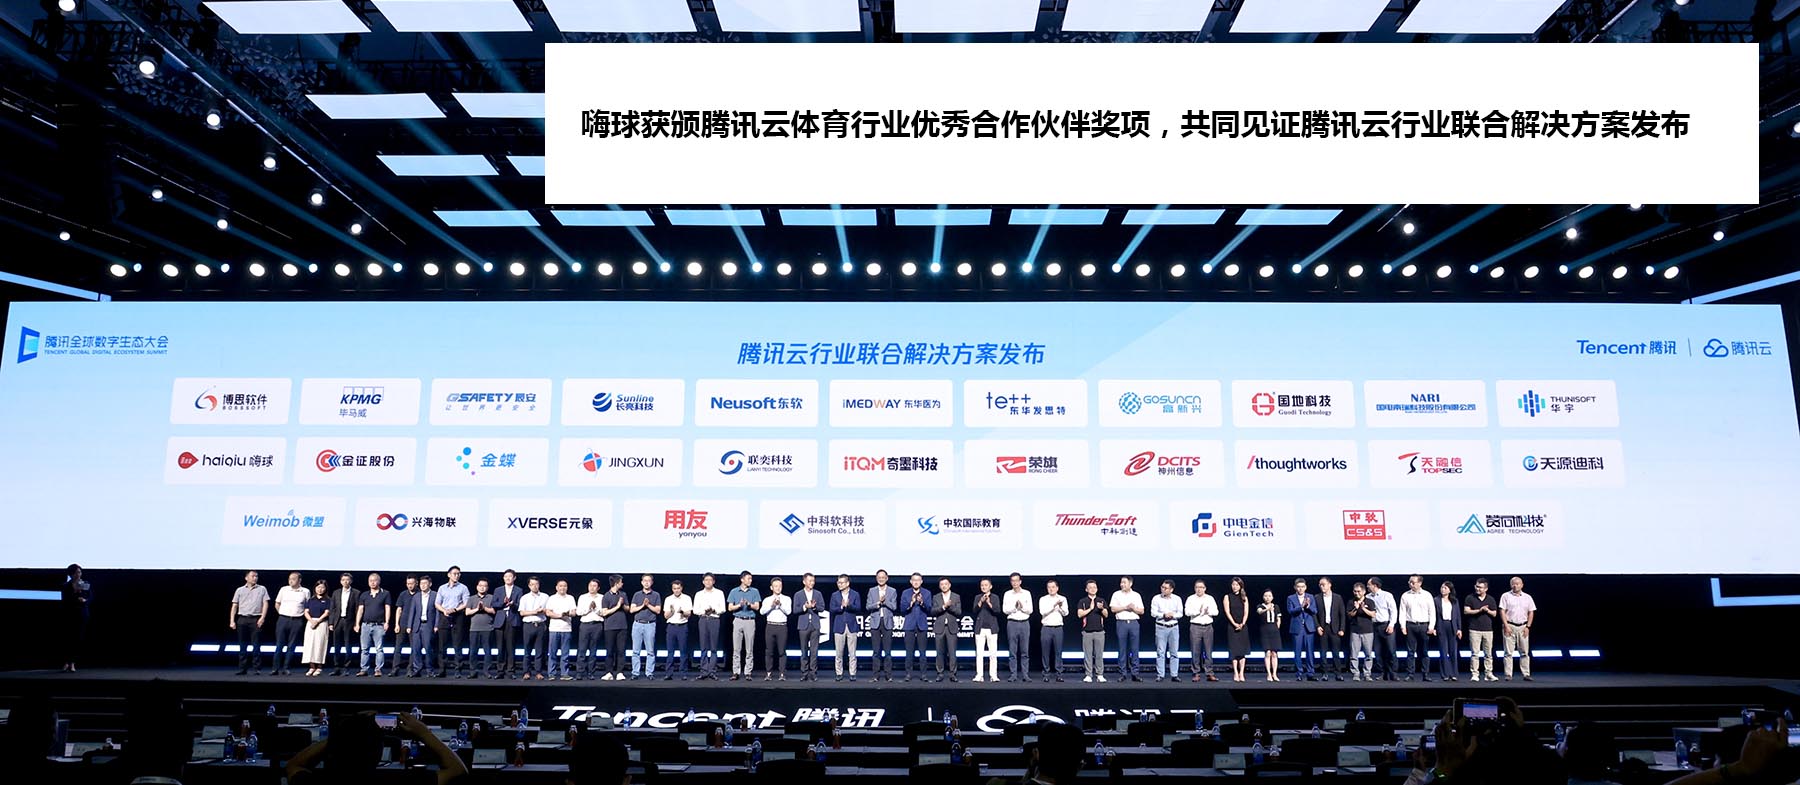 冠军体育(上海)有限公司获评腾讯云体育行业优秀合作伙伴